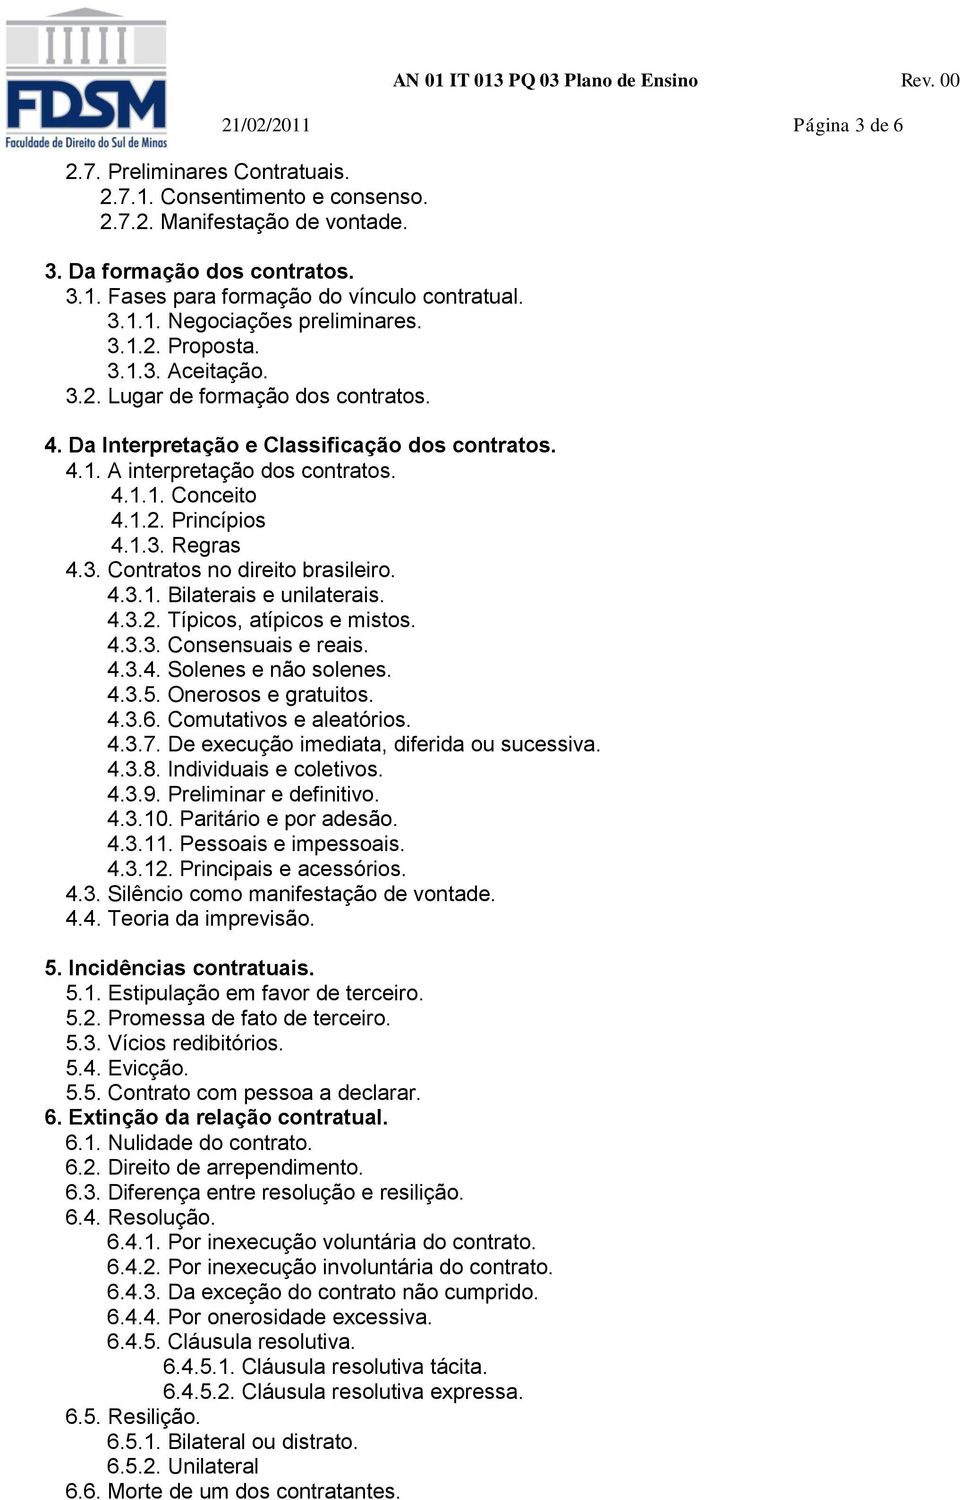 1.2. Princípios 4.1.3. Regras 4.3. Contratos no direito brasileiro. 4.3.1. Bilaterais e unilaterais. 4.3.2. Típicos, atípicos e mistos. 4.3.3. Consensuais e reais. 4.3.4. Solenes e não solenes. 4.3.5.